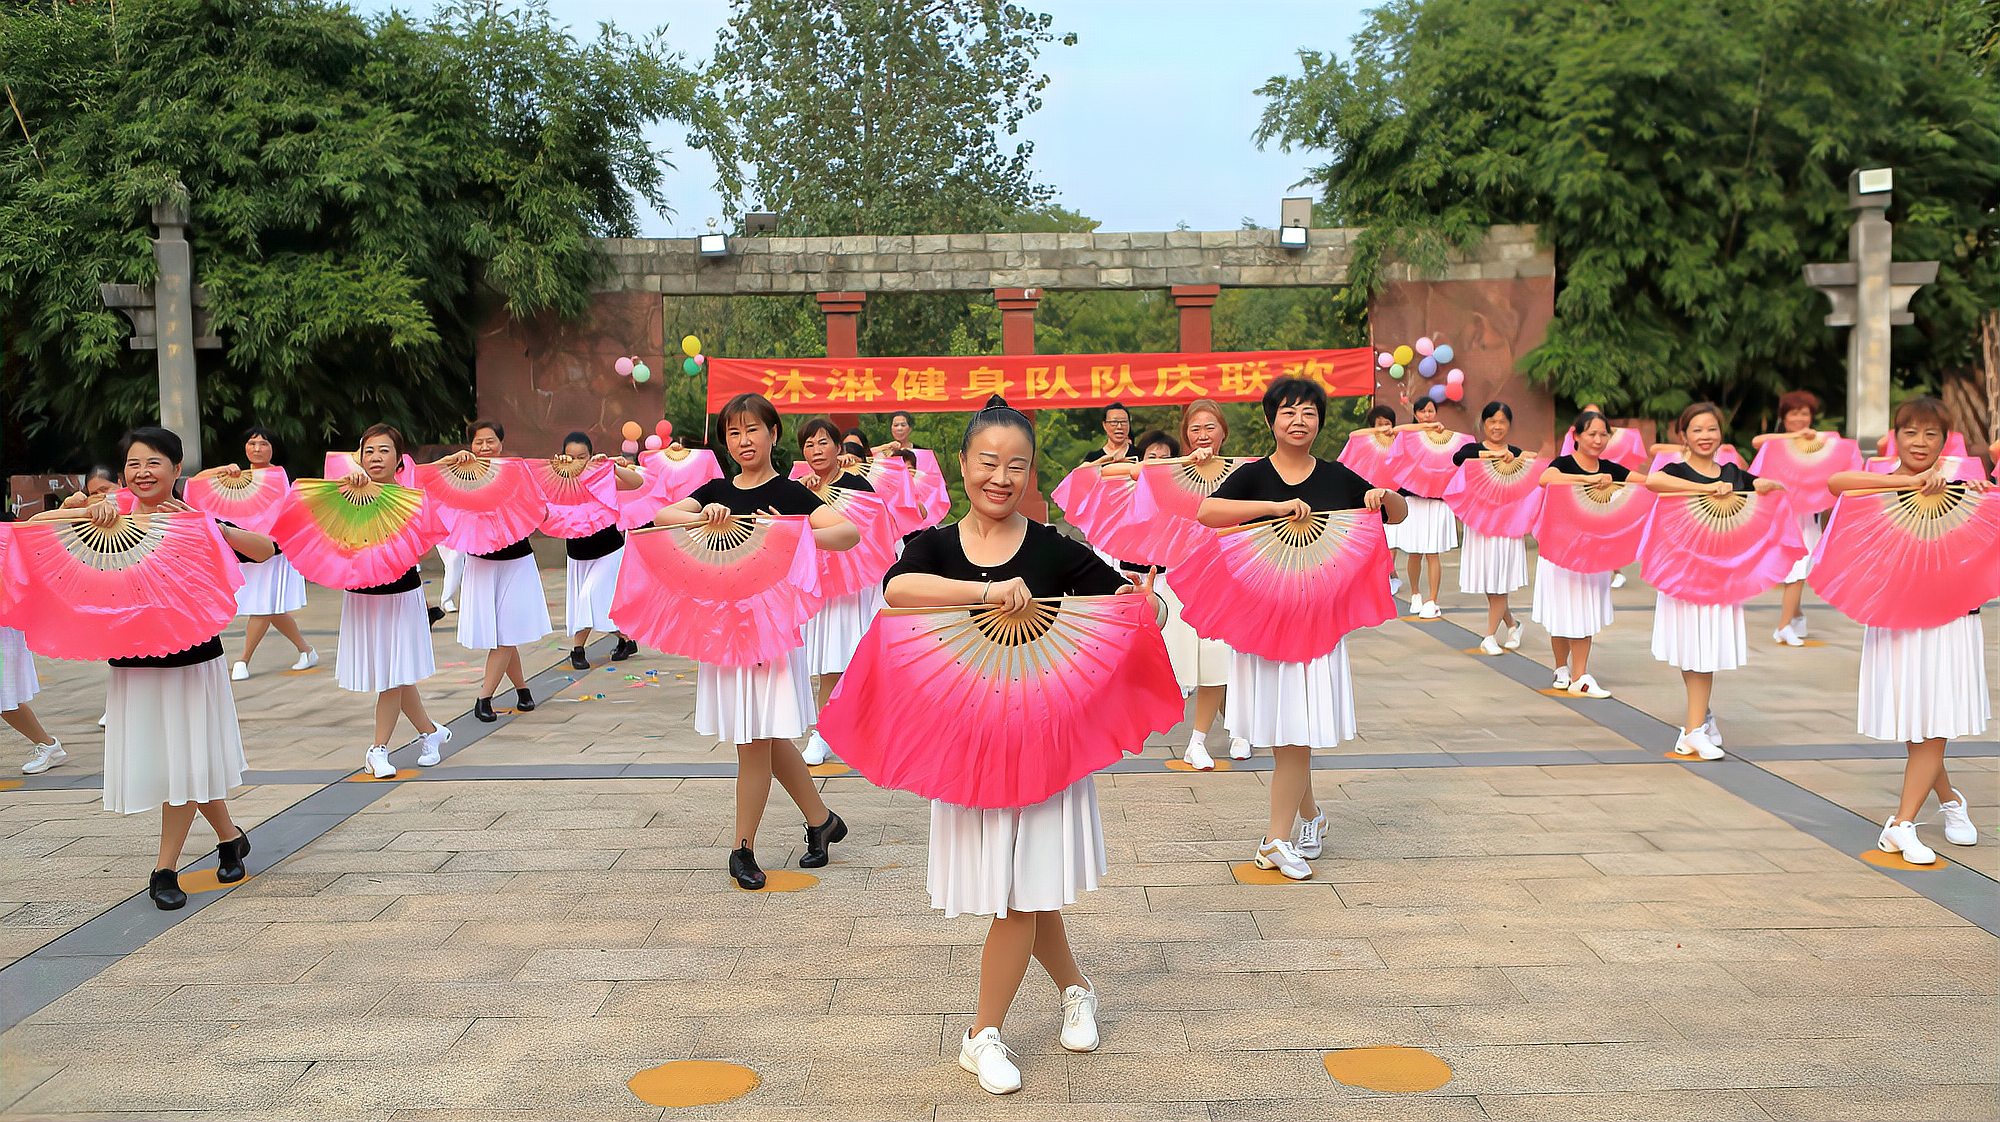 衡阳沐林健身广场舞:大型扇子舞——《兰花花》,活泼欢快